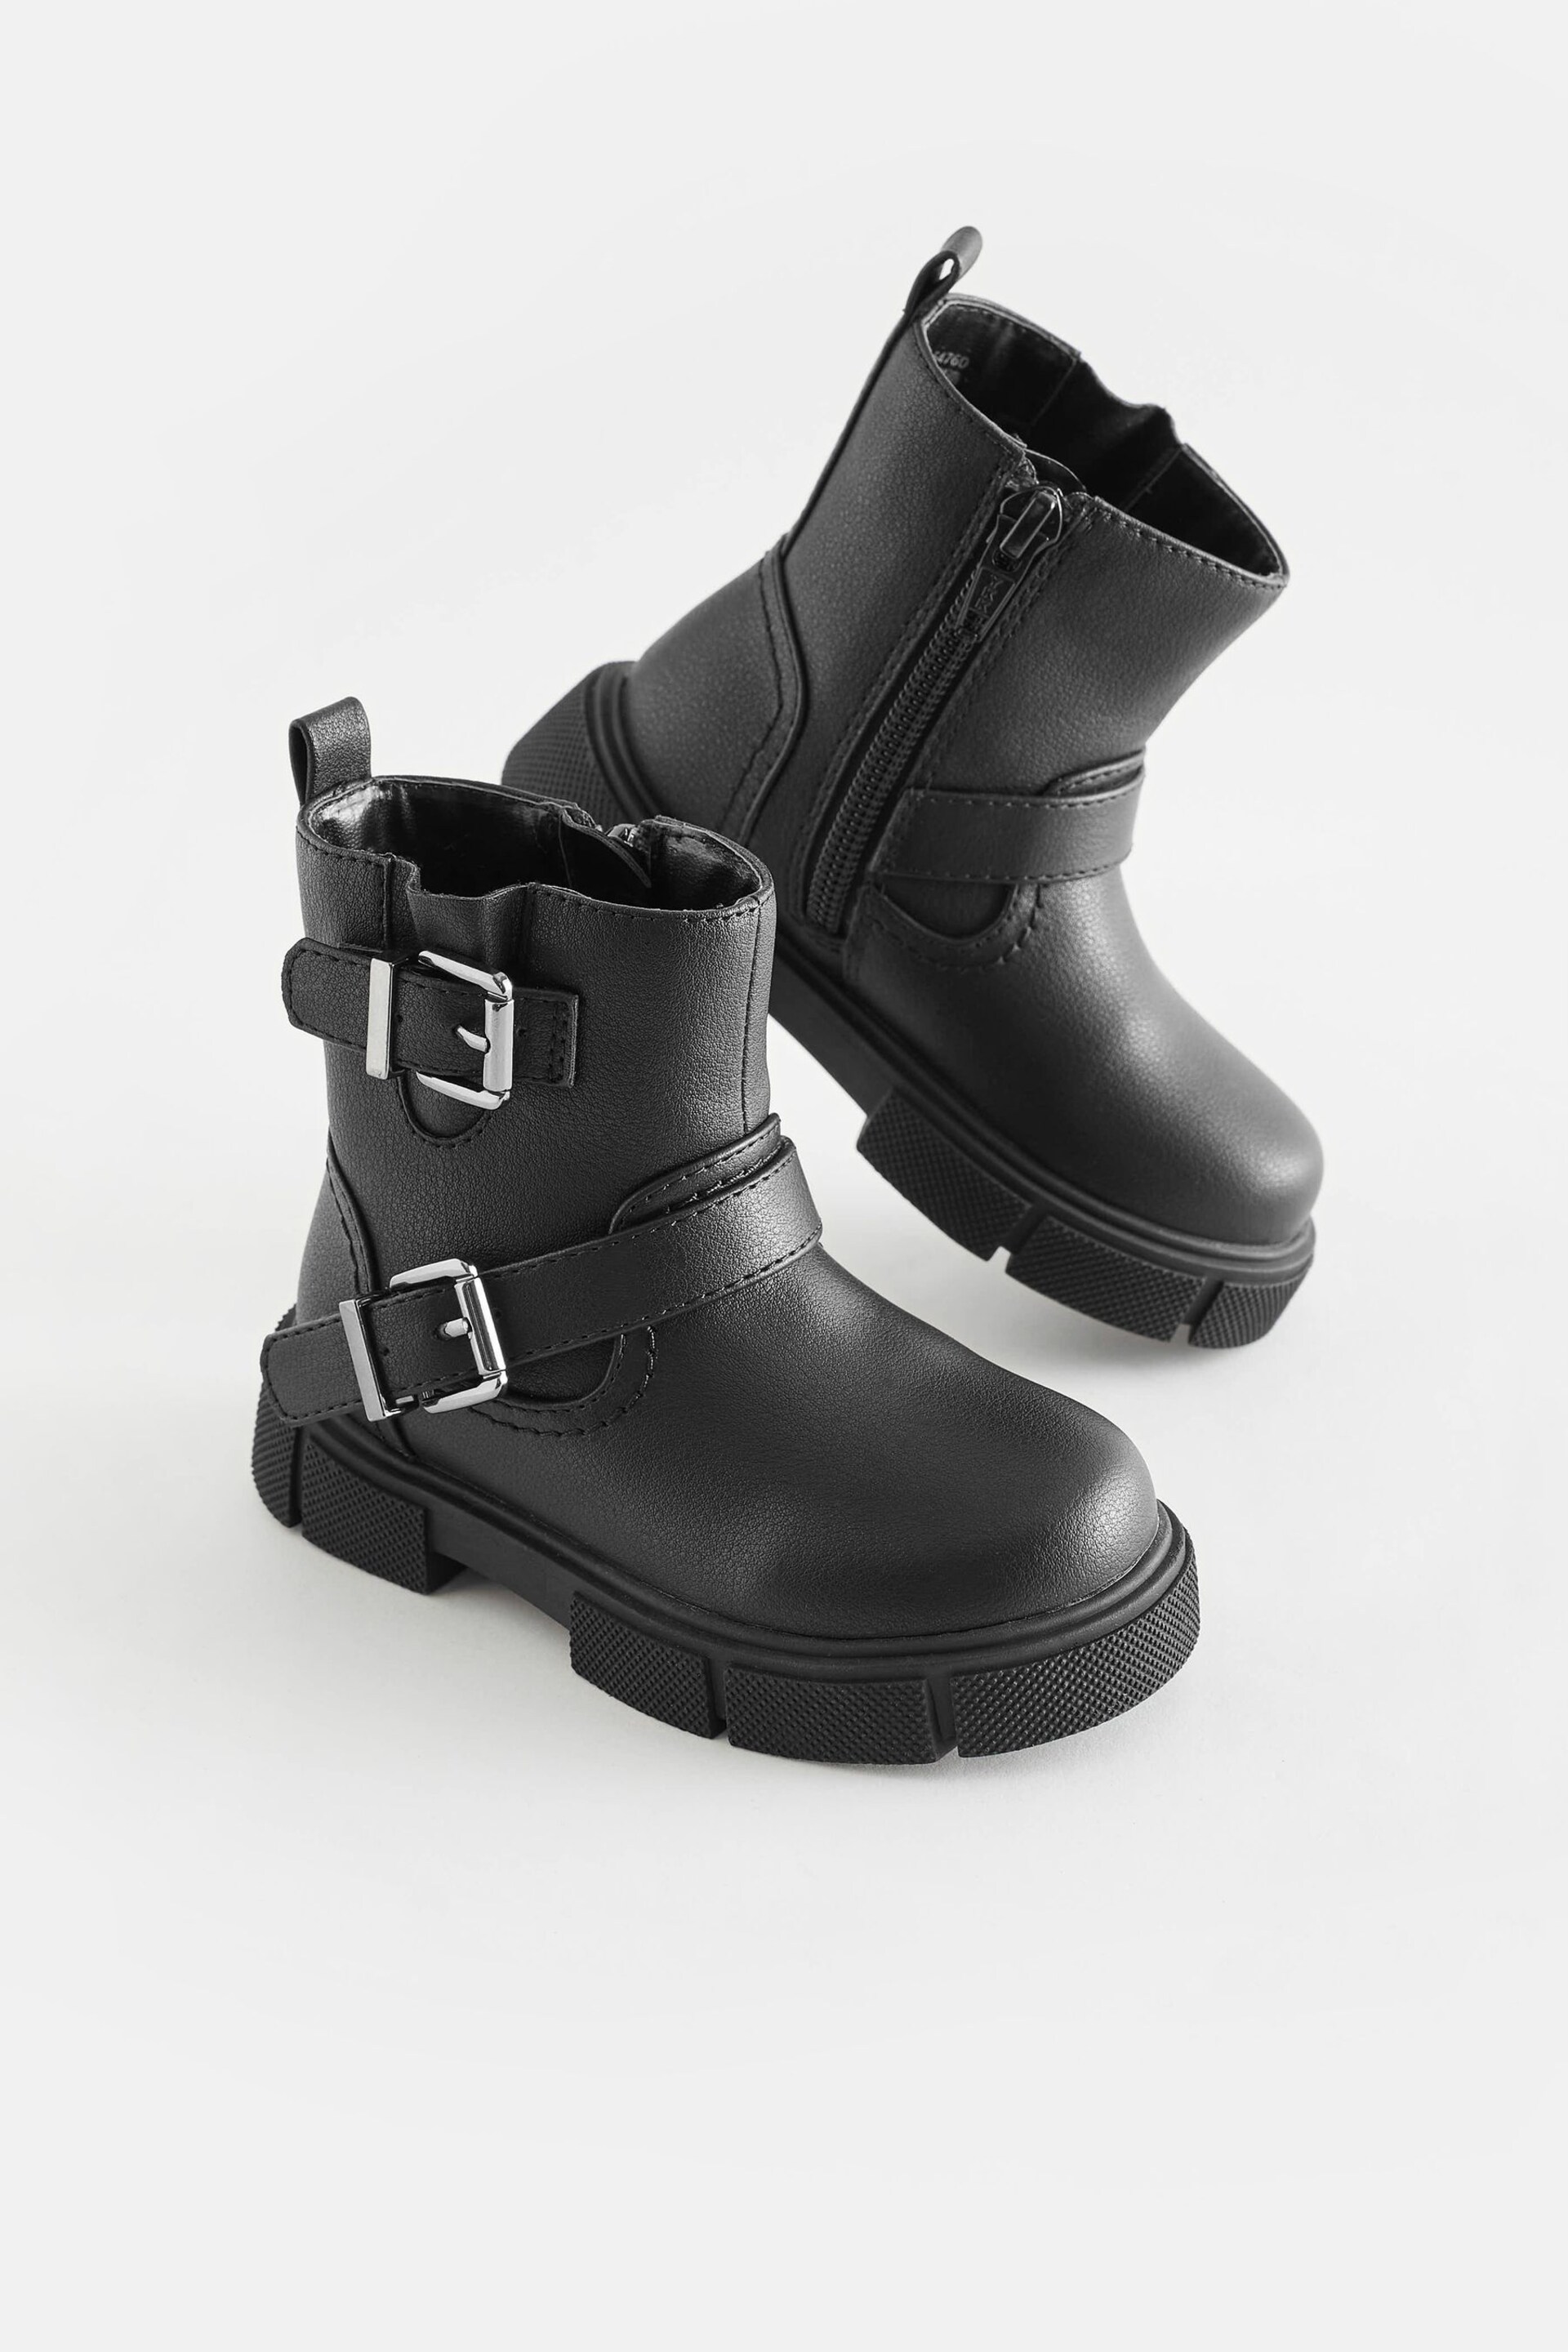 Black Biker Boots - Image 1 of 5